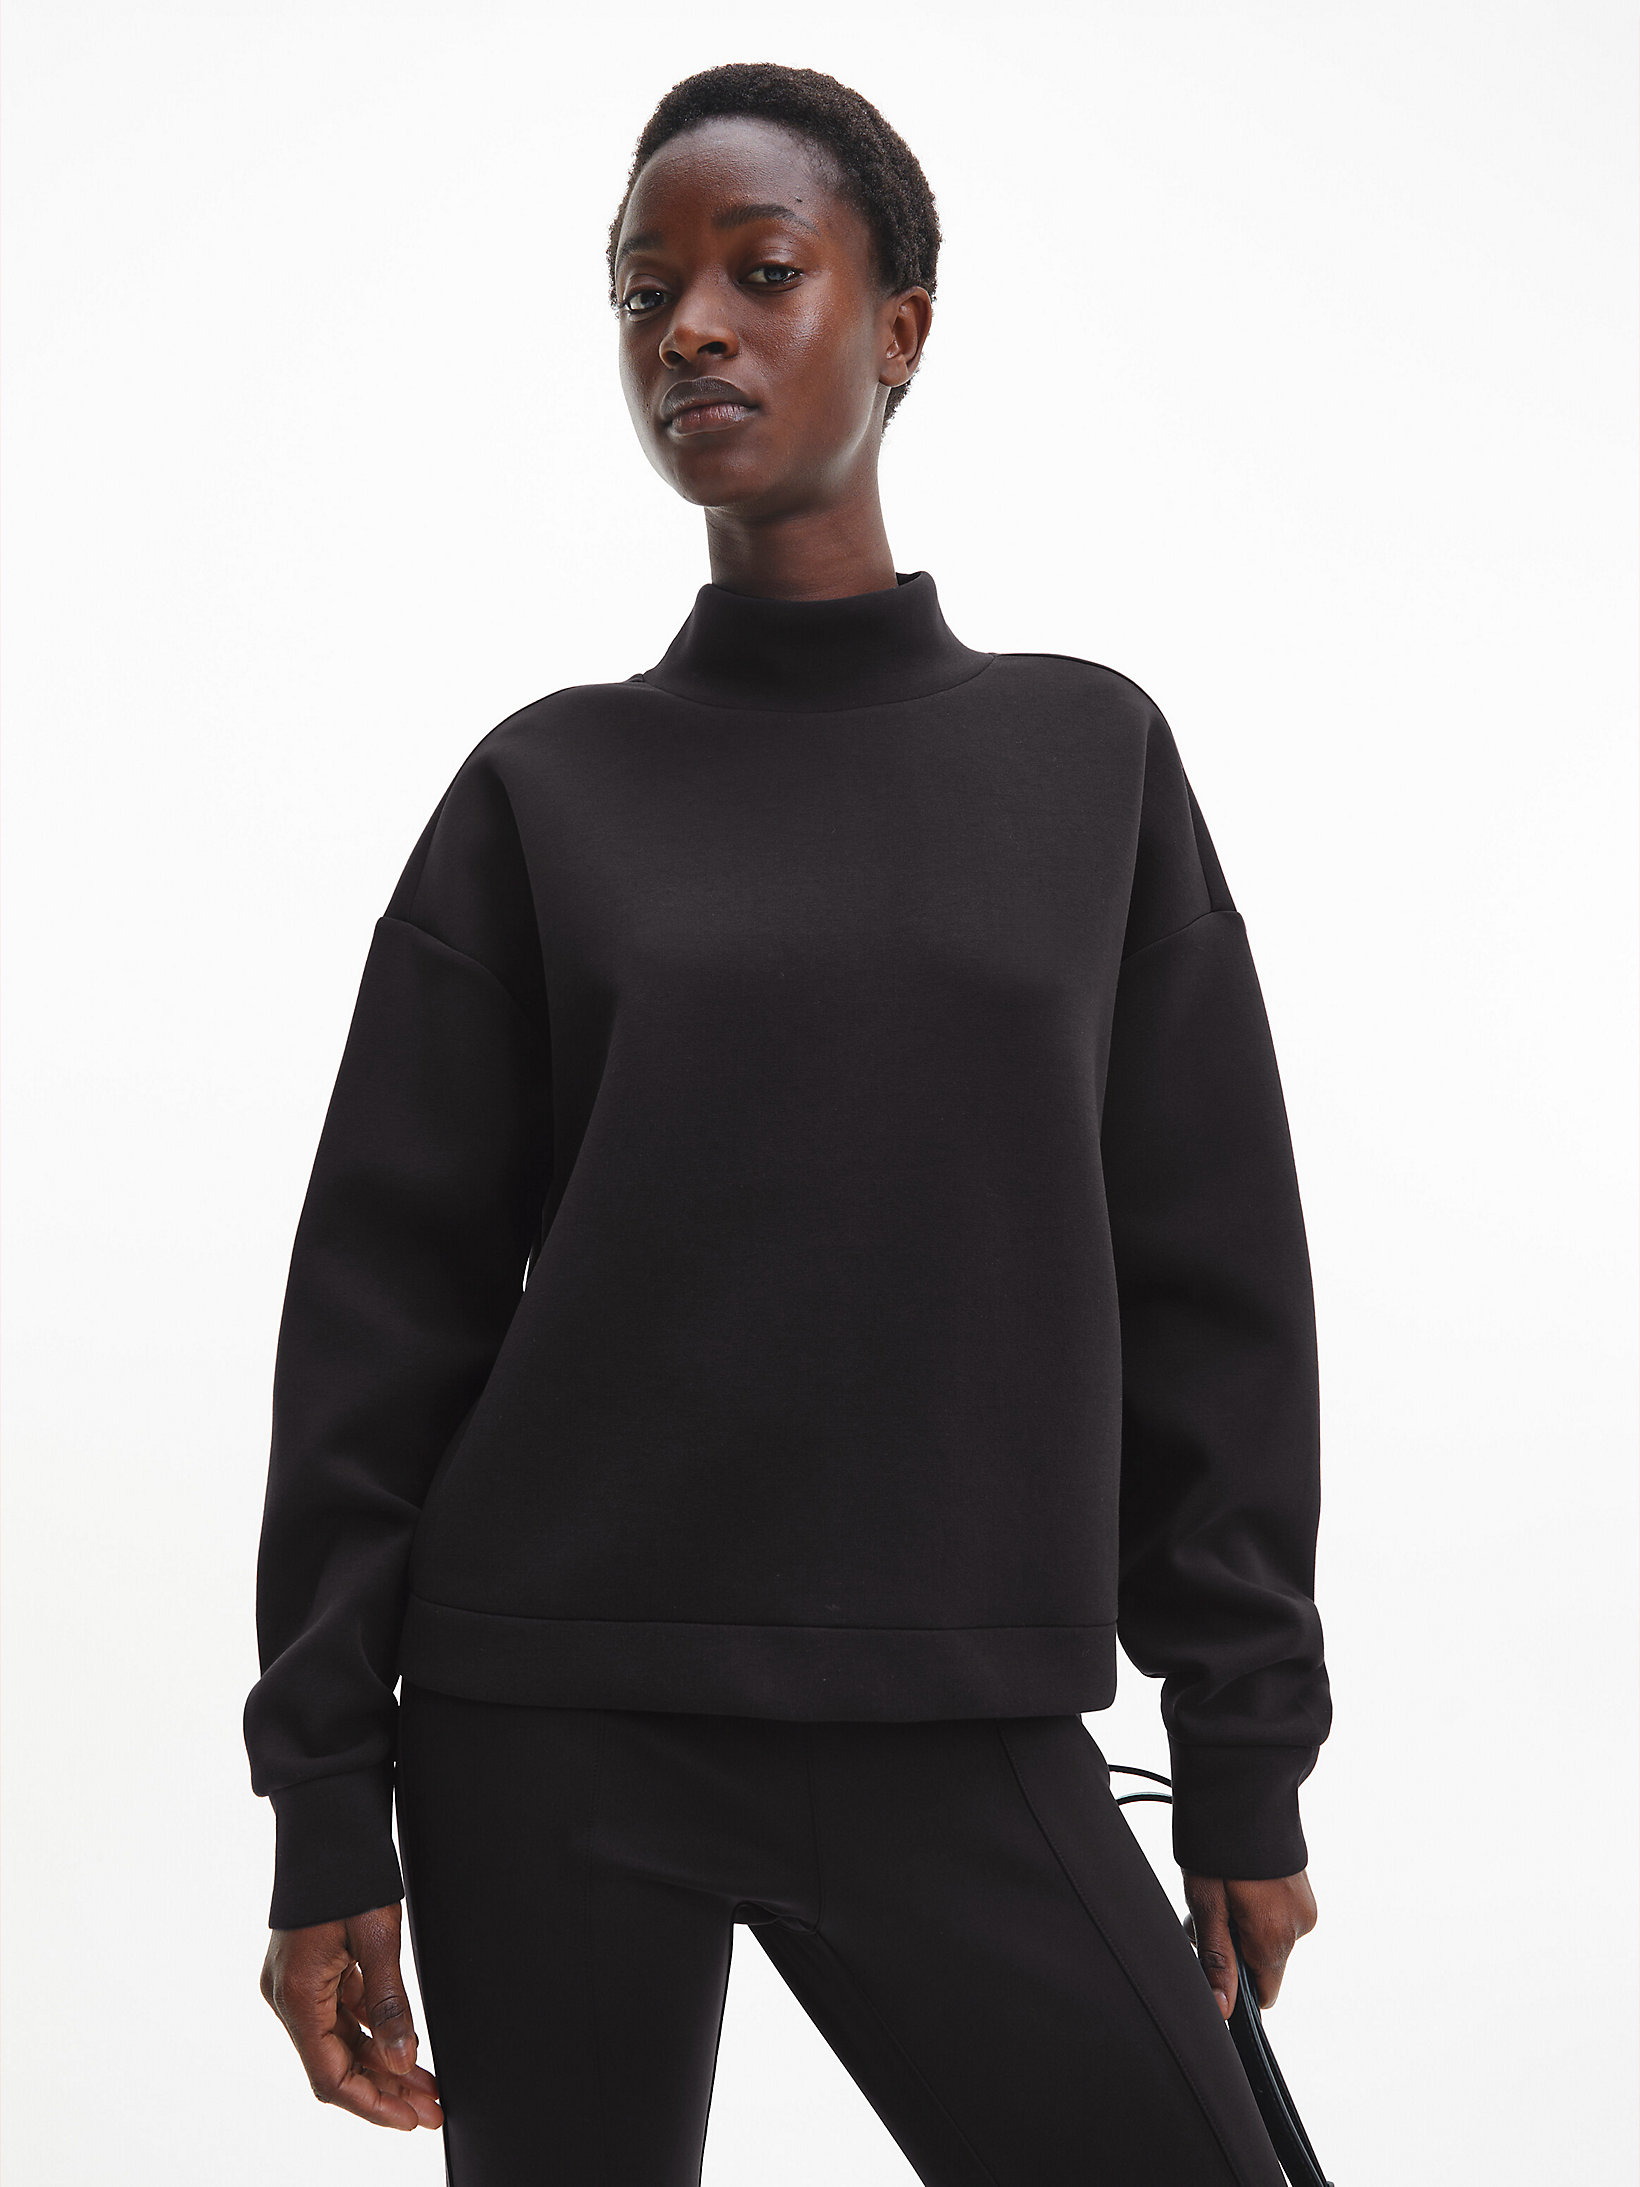 CK Black Lässiges Sweatshirt Mit Hohem Halsausschnitt undefined Damen Calvin Klein